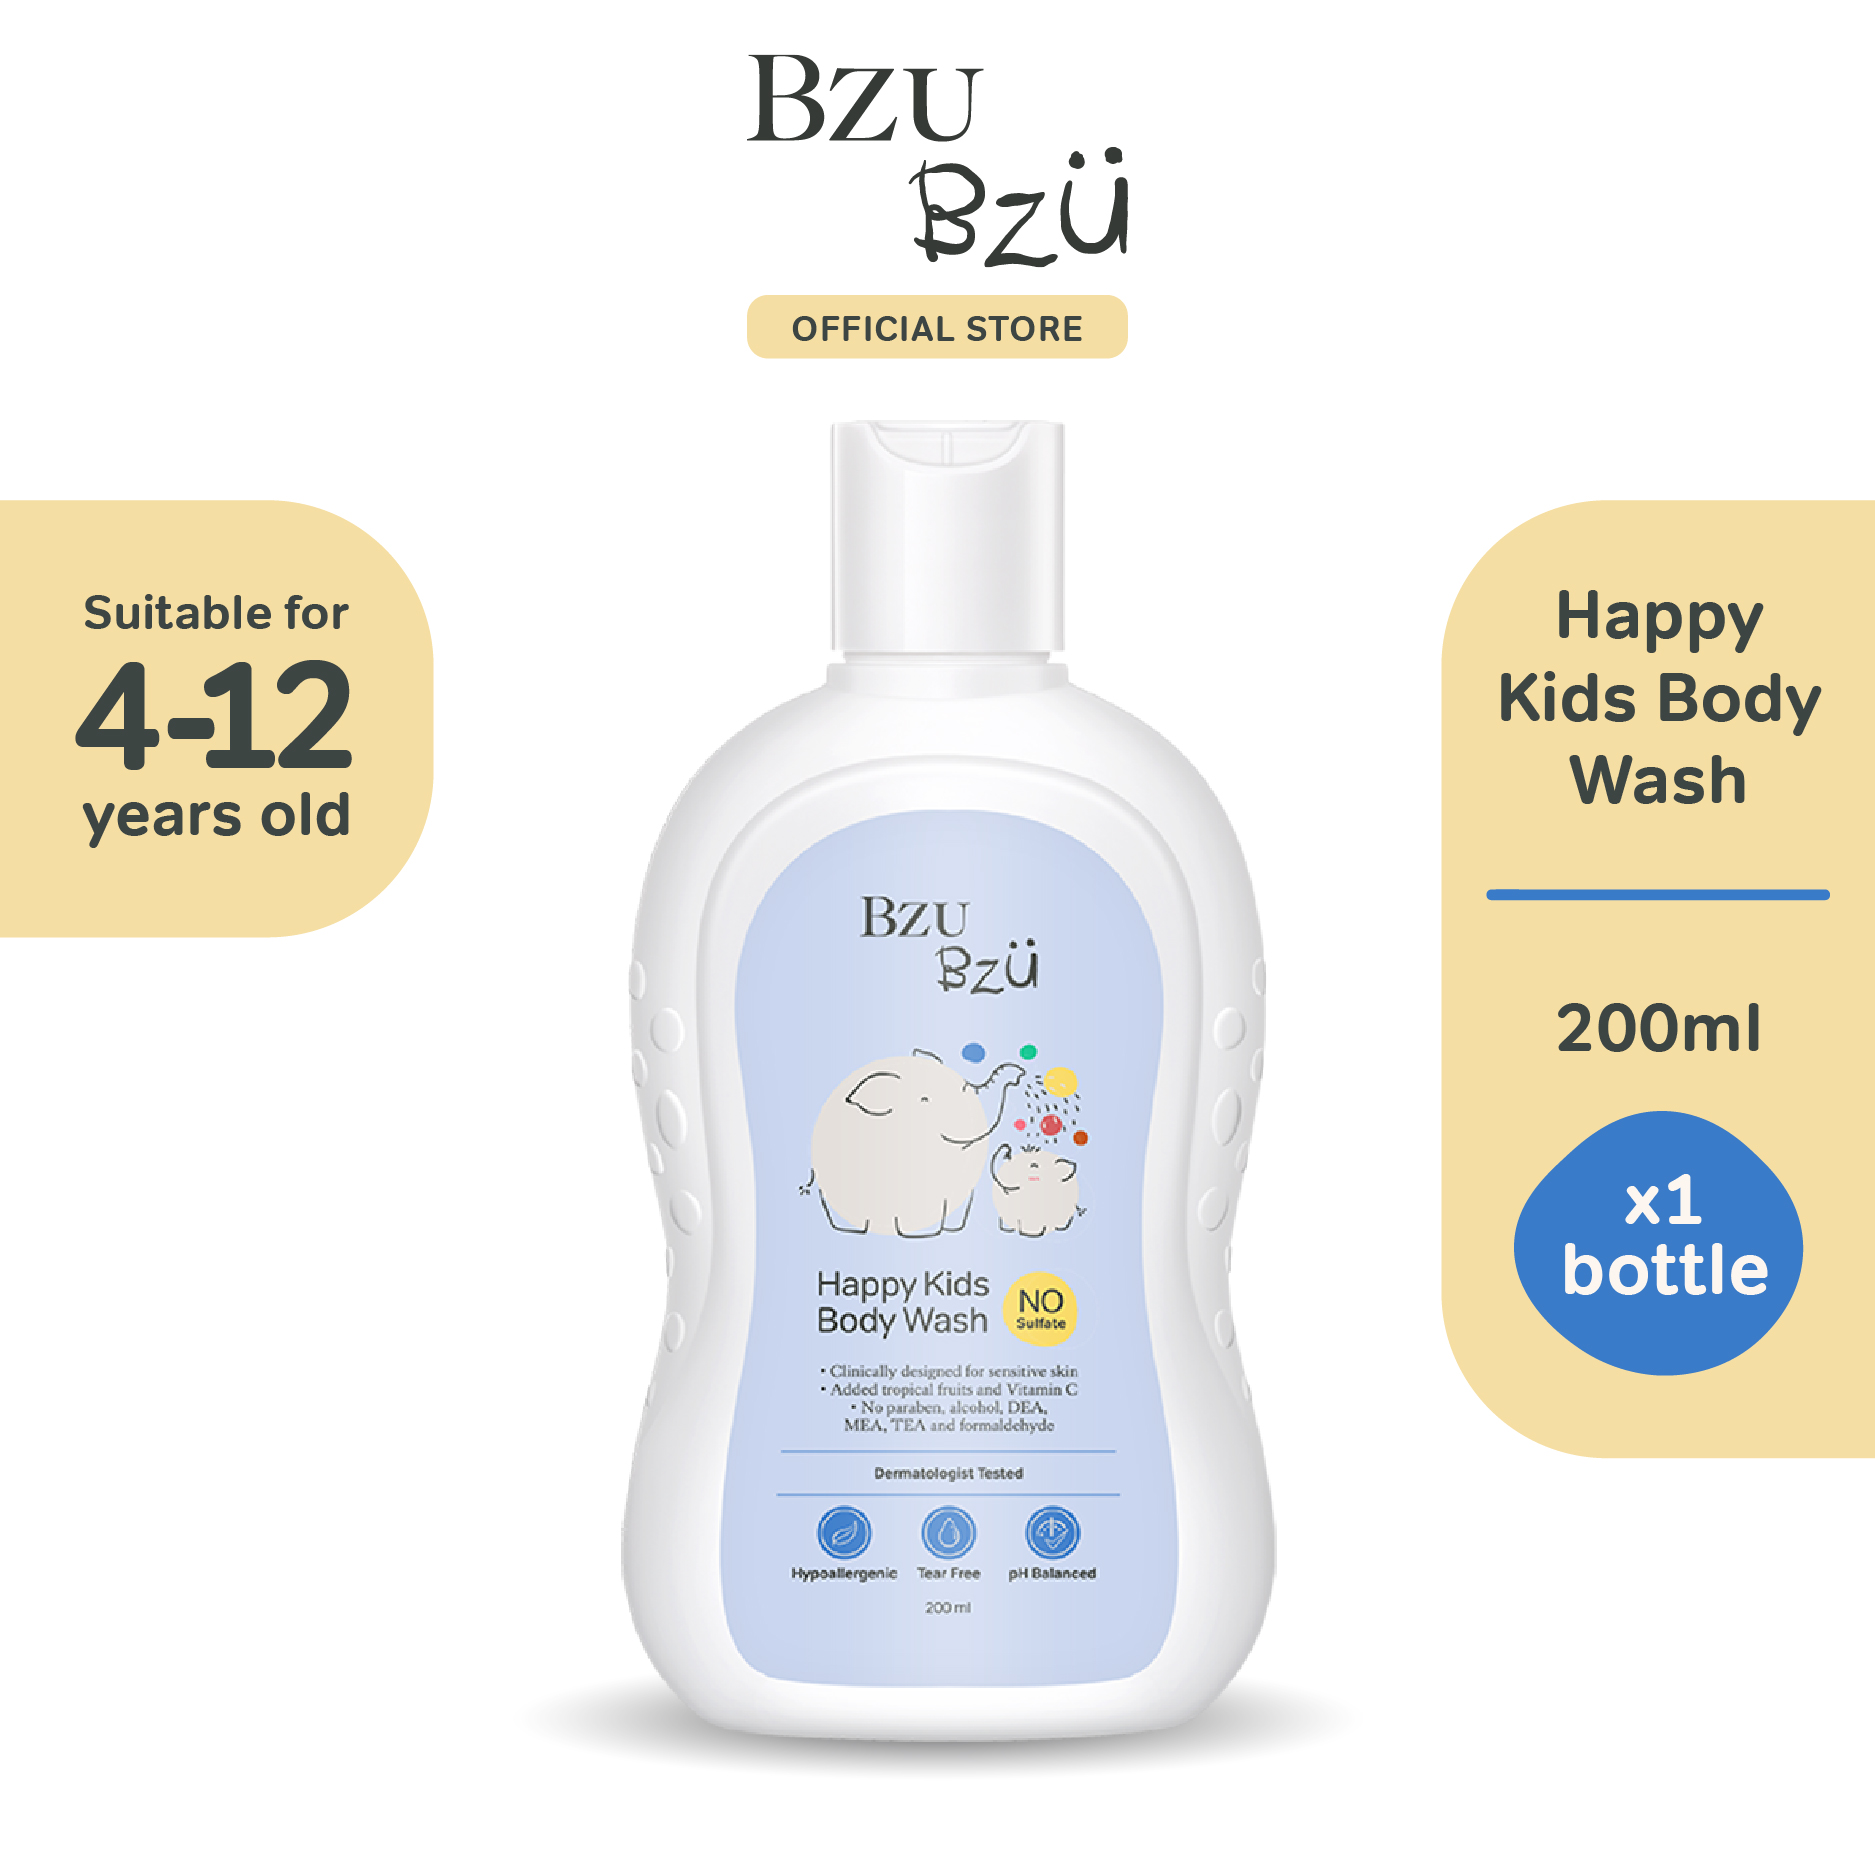 Bzu Bzu Happy Kids Body Wash 200ml